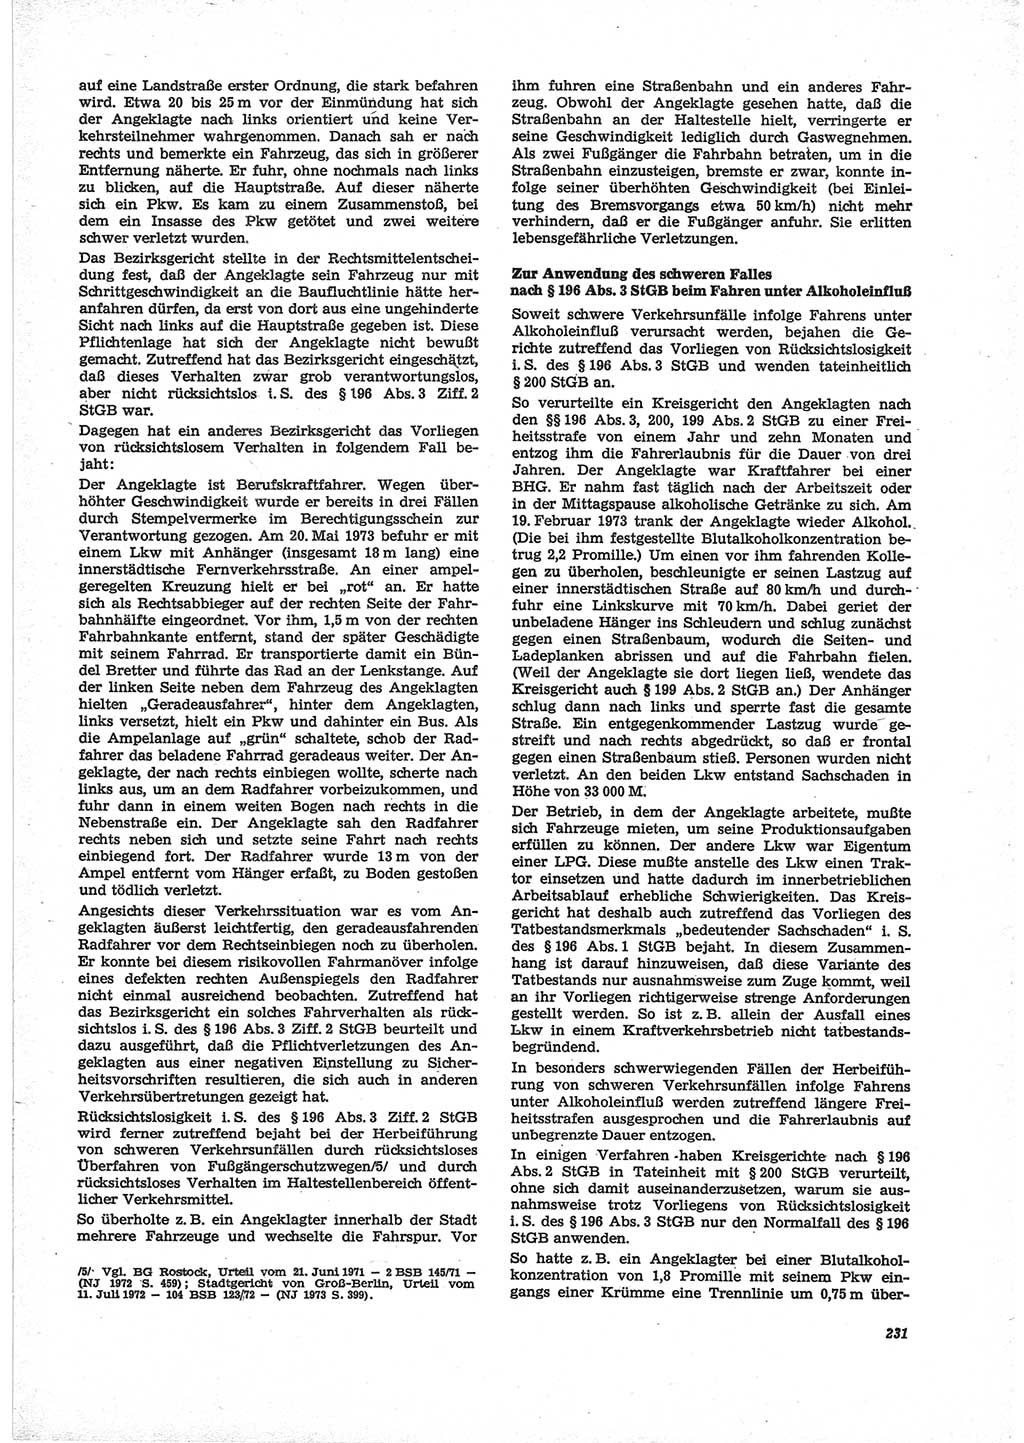 Neue Justiz (NJ), Zeitschrift für Recht und Rechtswissenschaft [Deutsche Demokratische Republik (DDR)], 28. Jahrgang 1974, Seite 231 (NJ DDR 1974, S. 231)